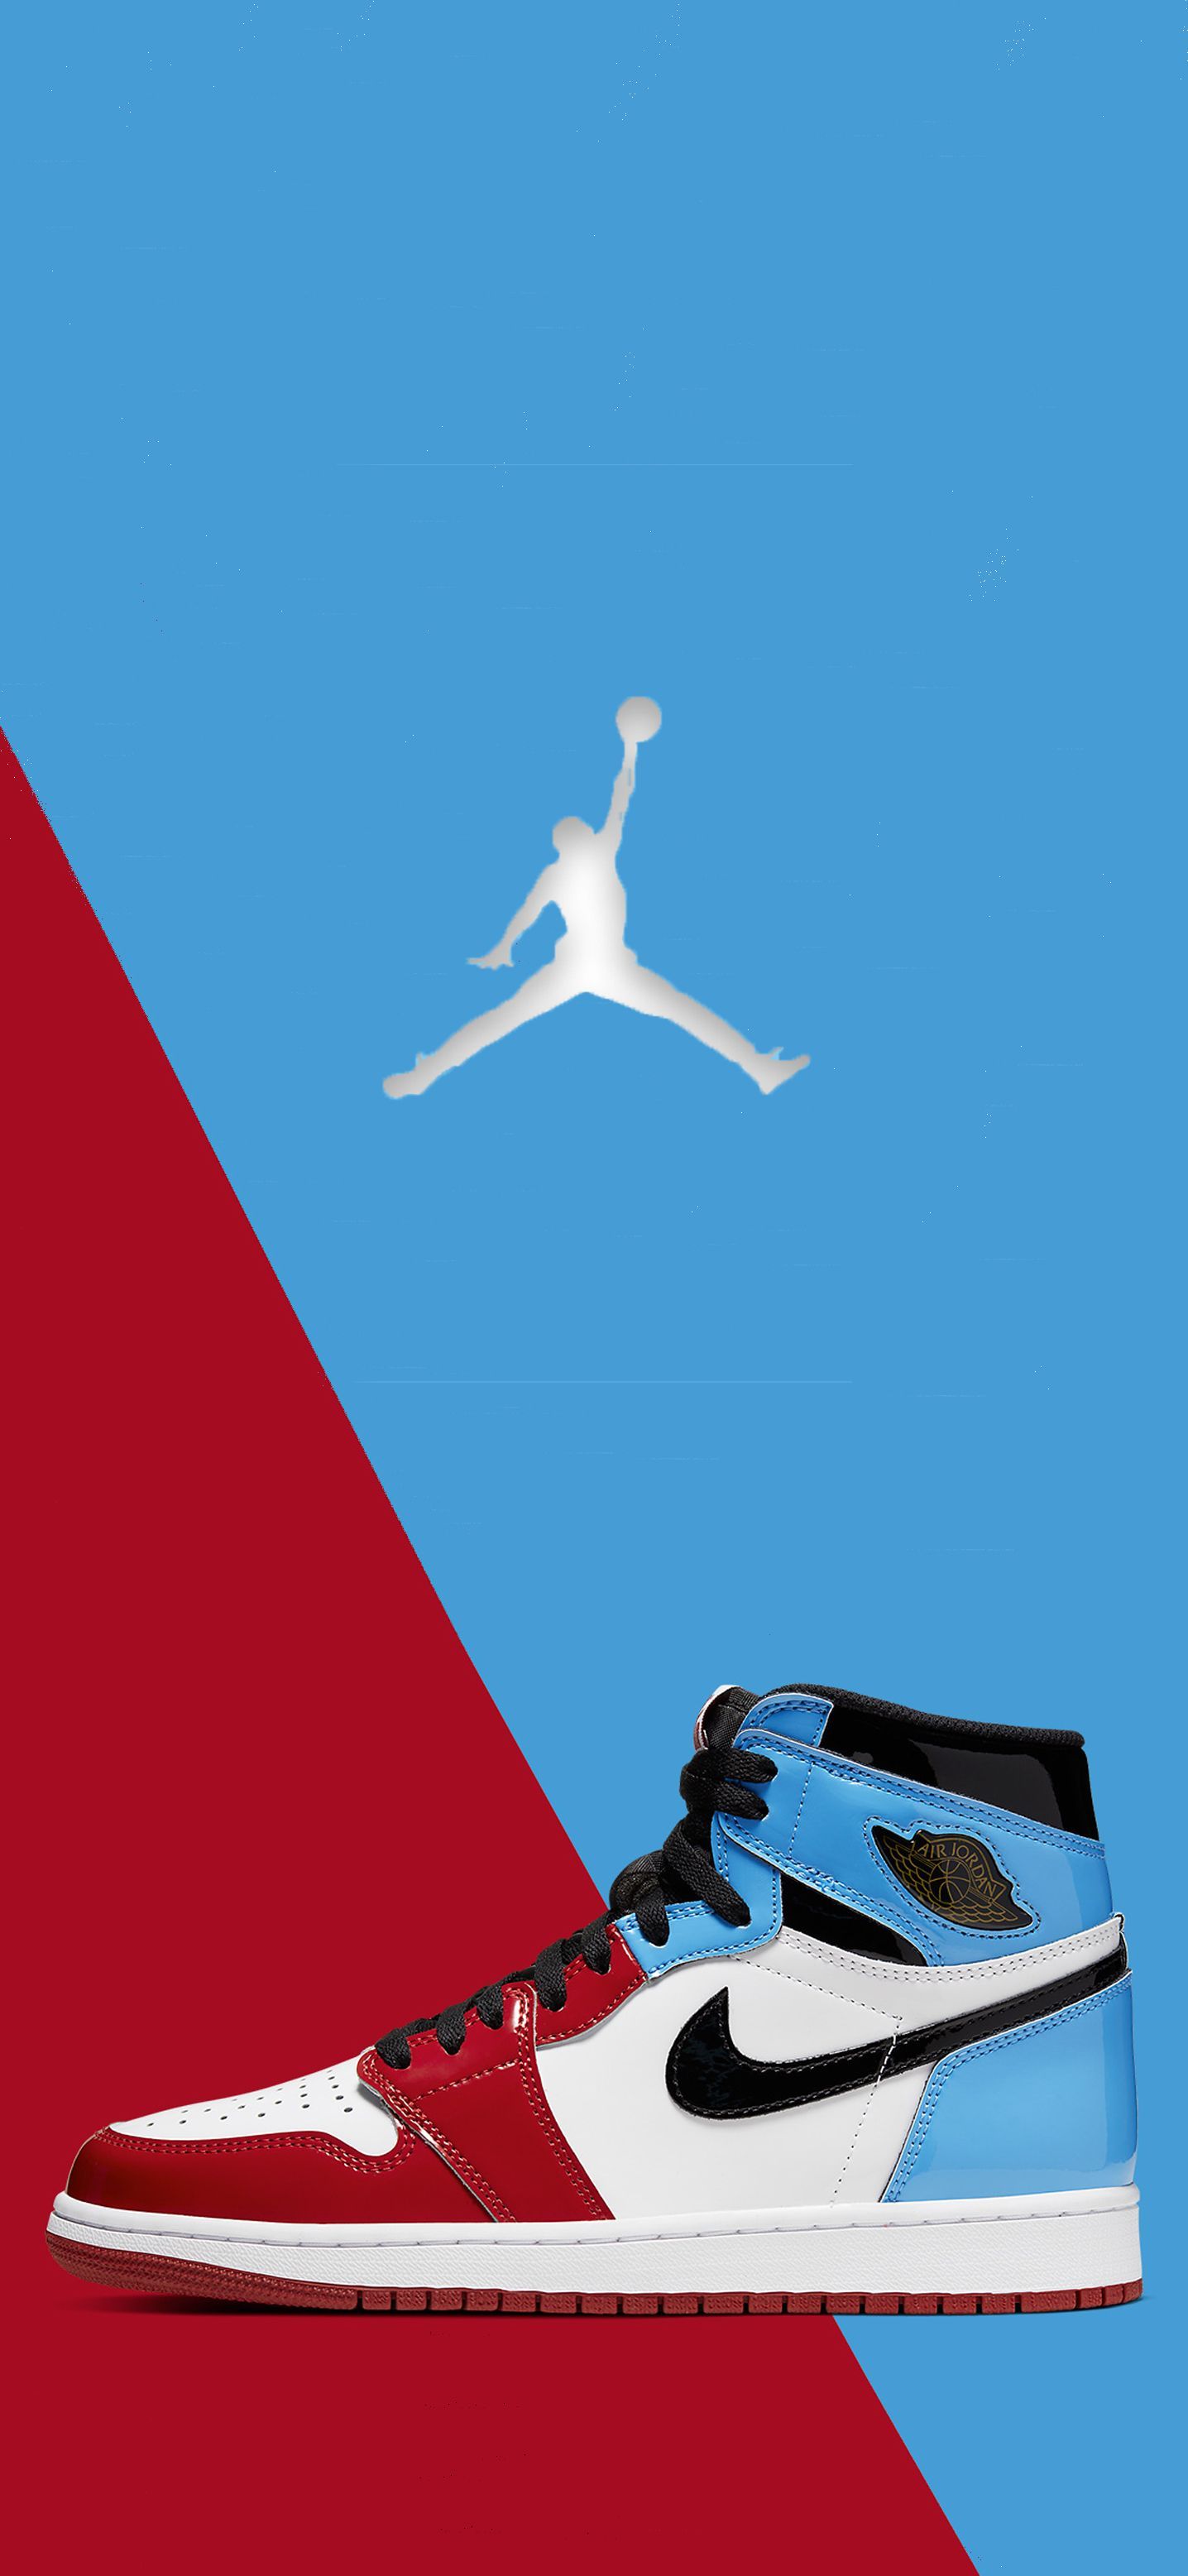 Fearless Jordan 1. Jordan 1 wallpaper, Jordan logo wallpaper, Jordan shoes wallpaper